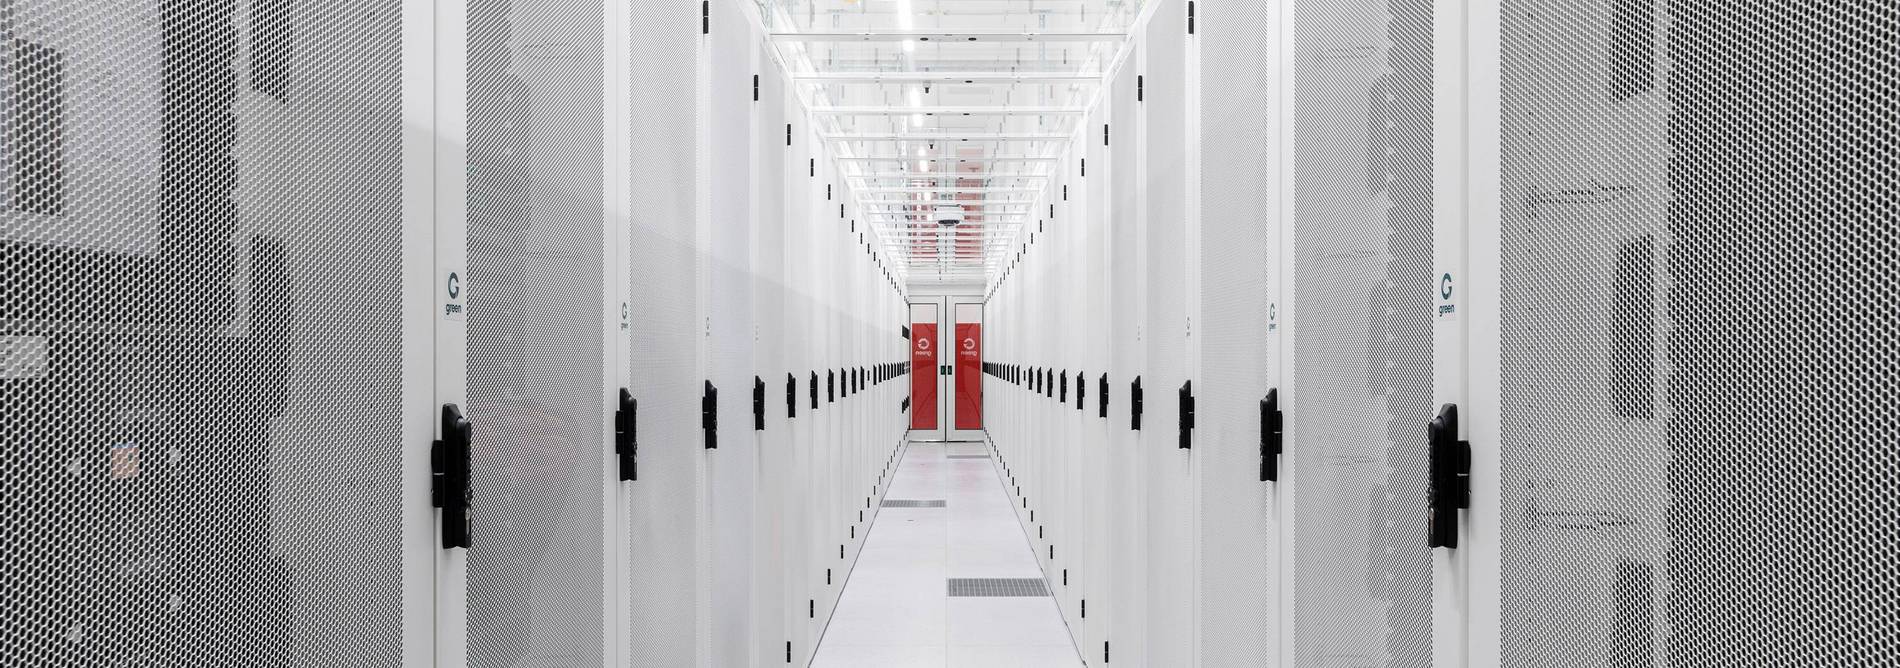 Datacenter Colocation Racks